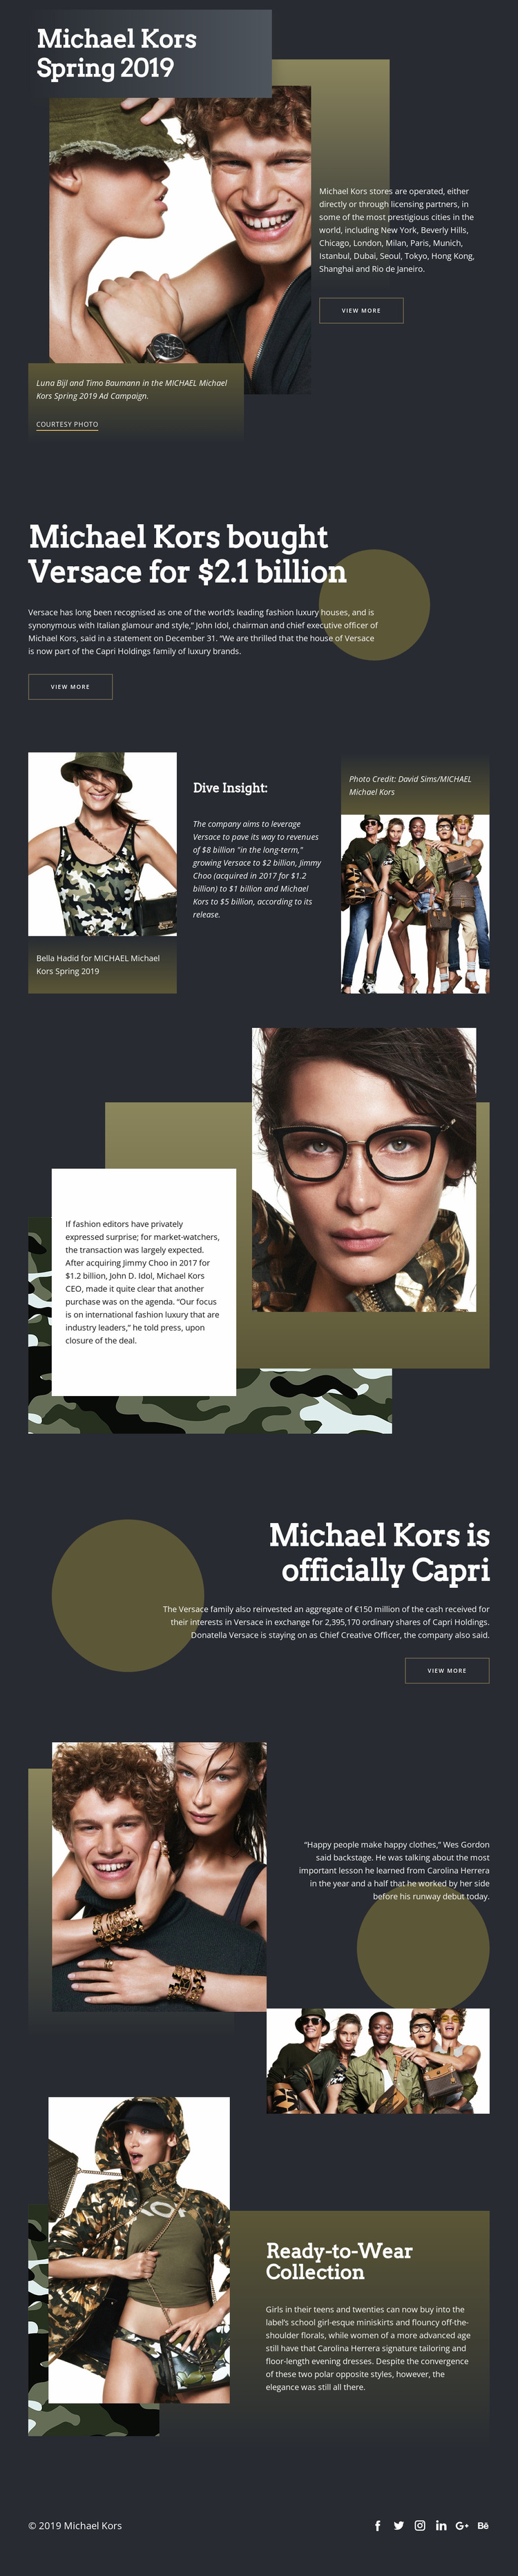 Michael Kors Dark Website Design